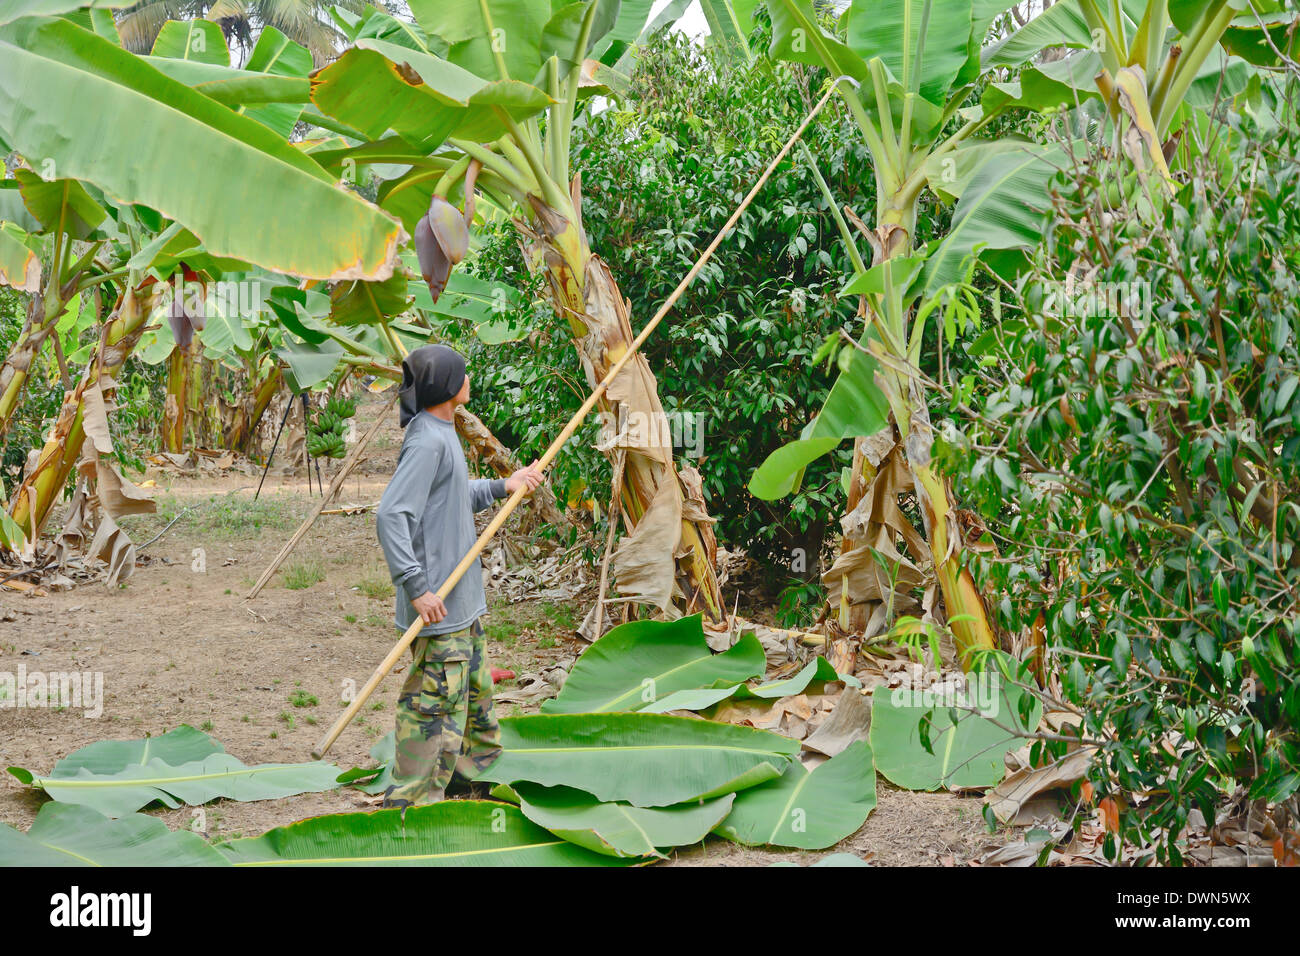 Suhkothai - Febbraio 15 :lavoratore non identificato è il taglio di foglie di banano nel giardino di banane nel febbraio 15,2014 in Sukhothai Thailandia Foto Stock